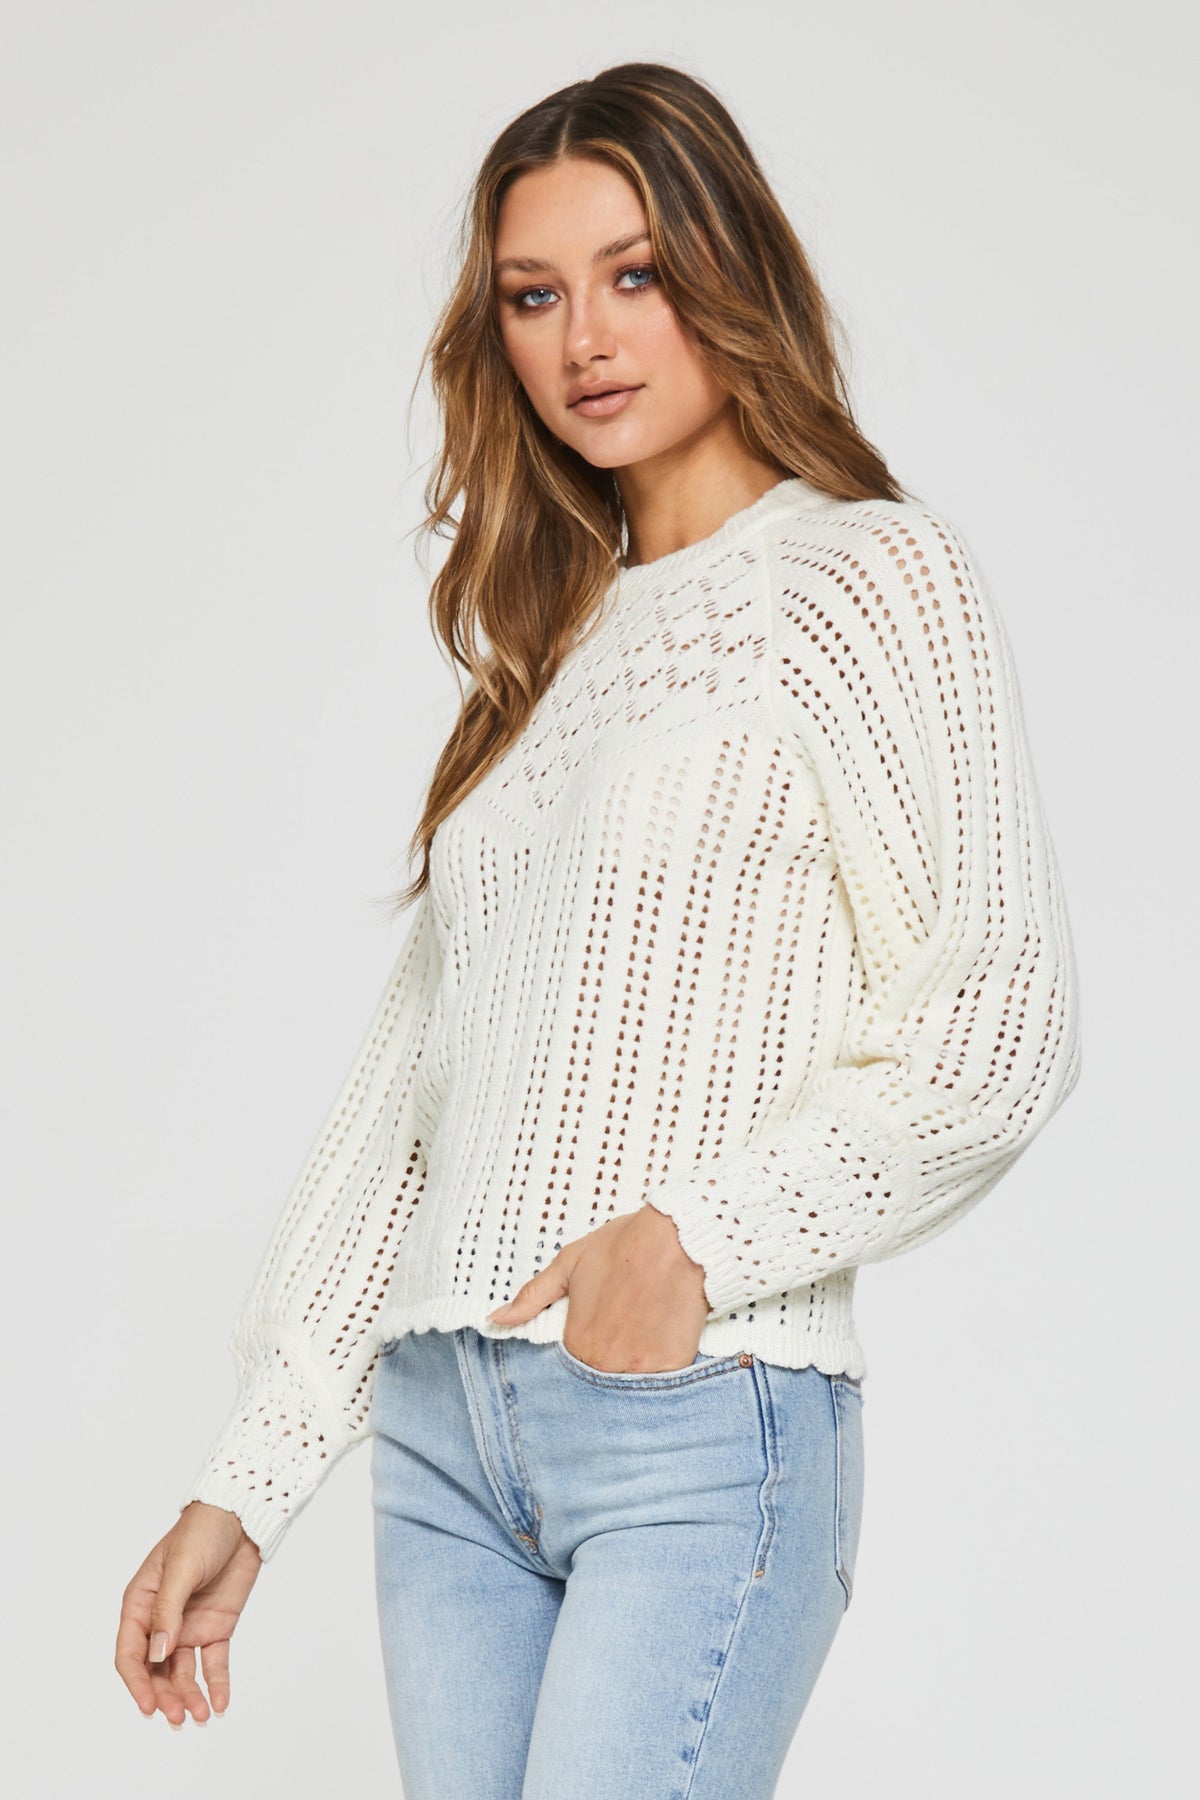 charlene-crochet-sweater-procelain-full-image-another-love-clothing